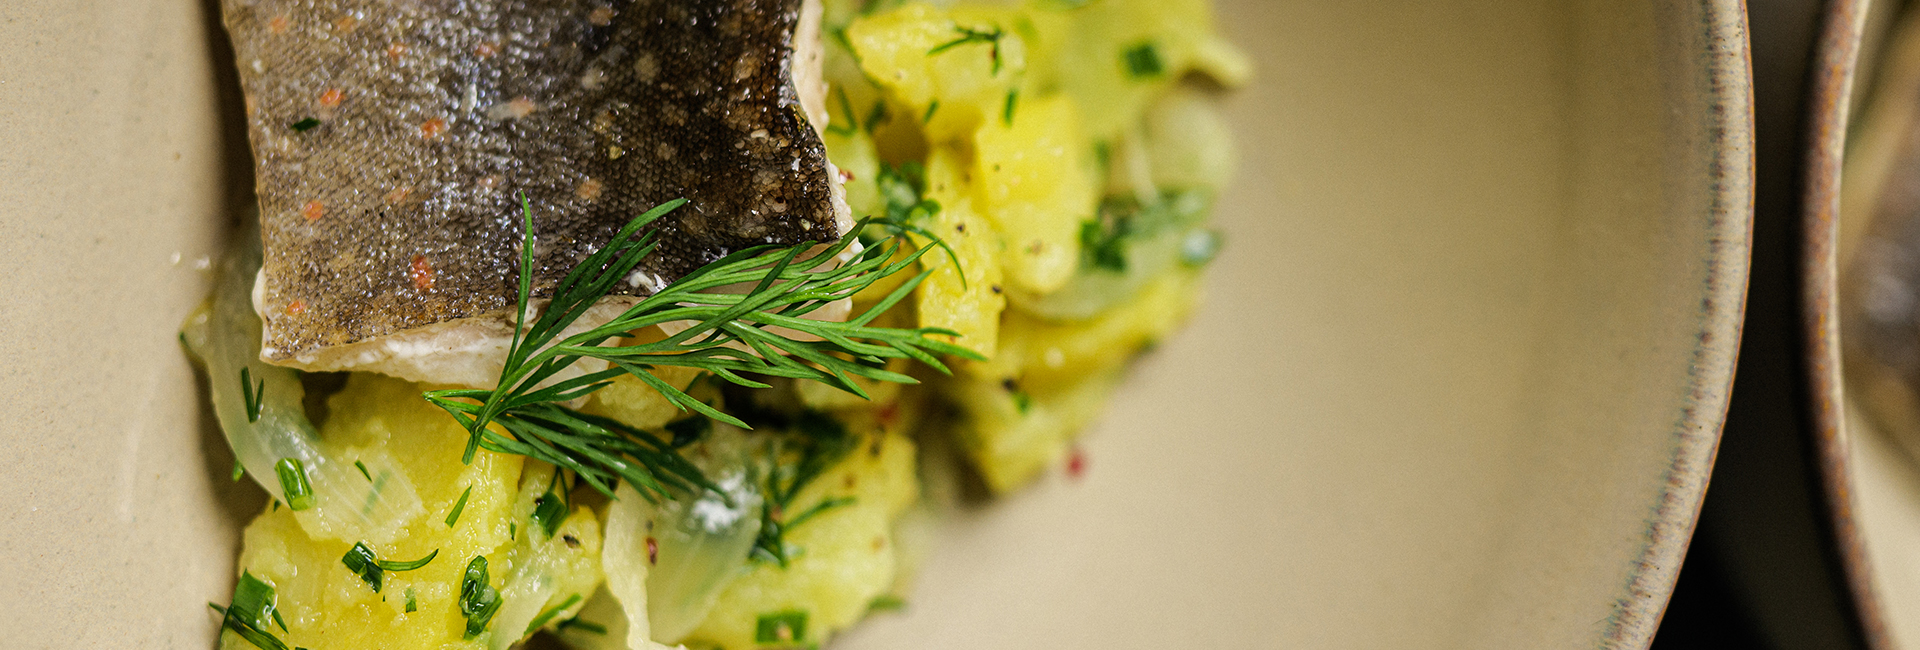 Fischfilet mit Kartoffelsalat - Gerichte mit Forelle